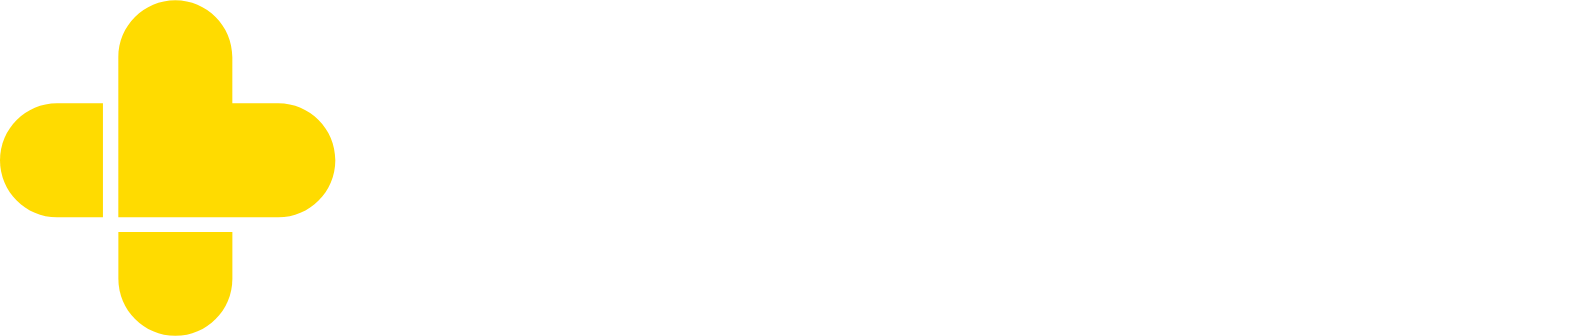 GoodRx Logo groß für dunkle Hintergründe (transparentes PNG)